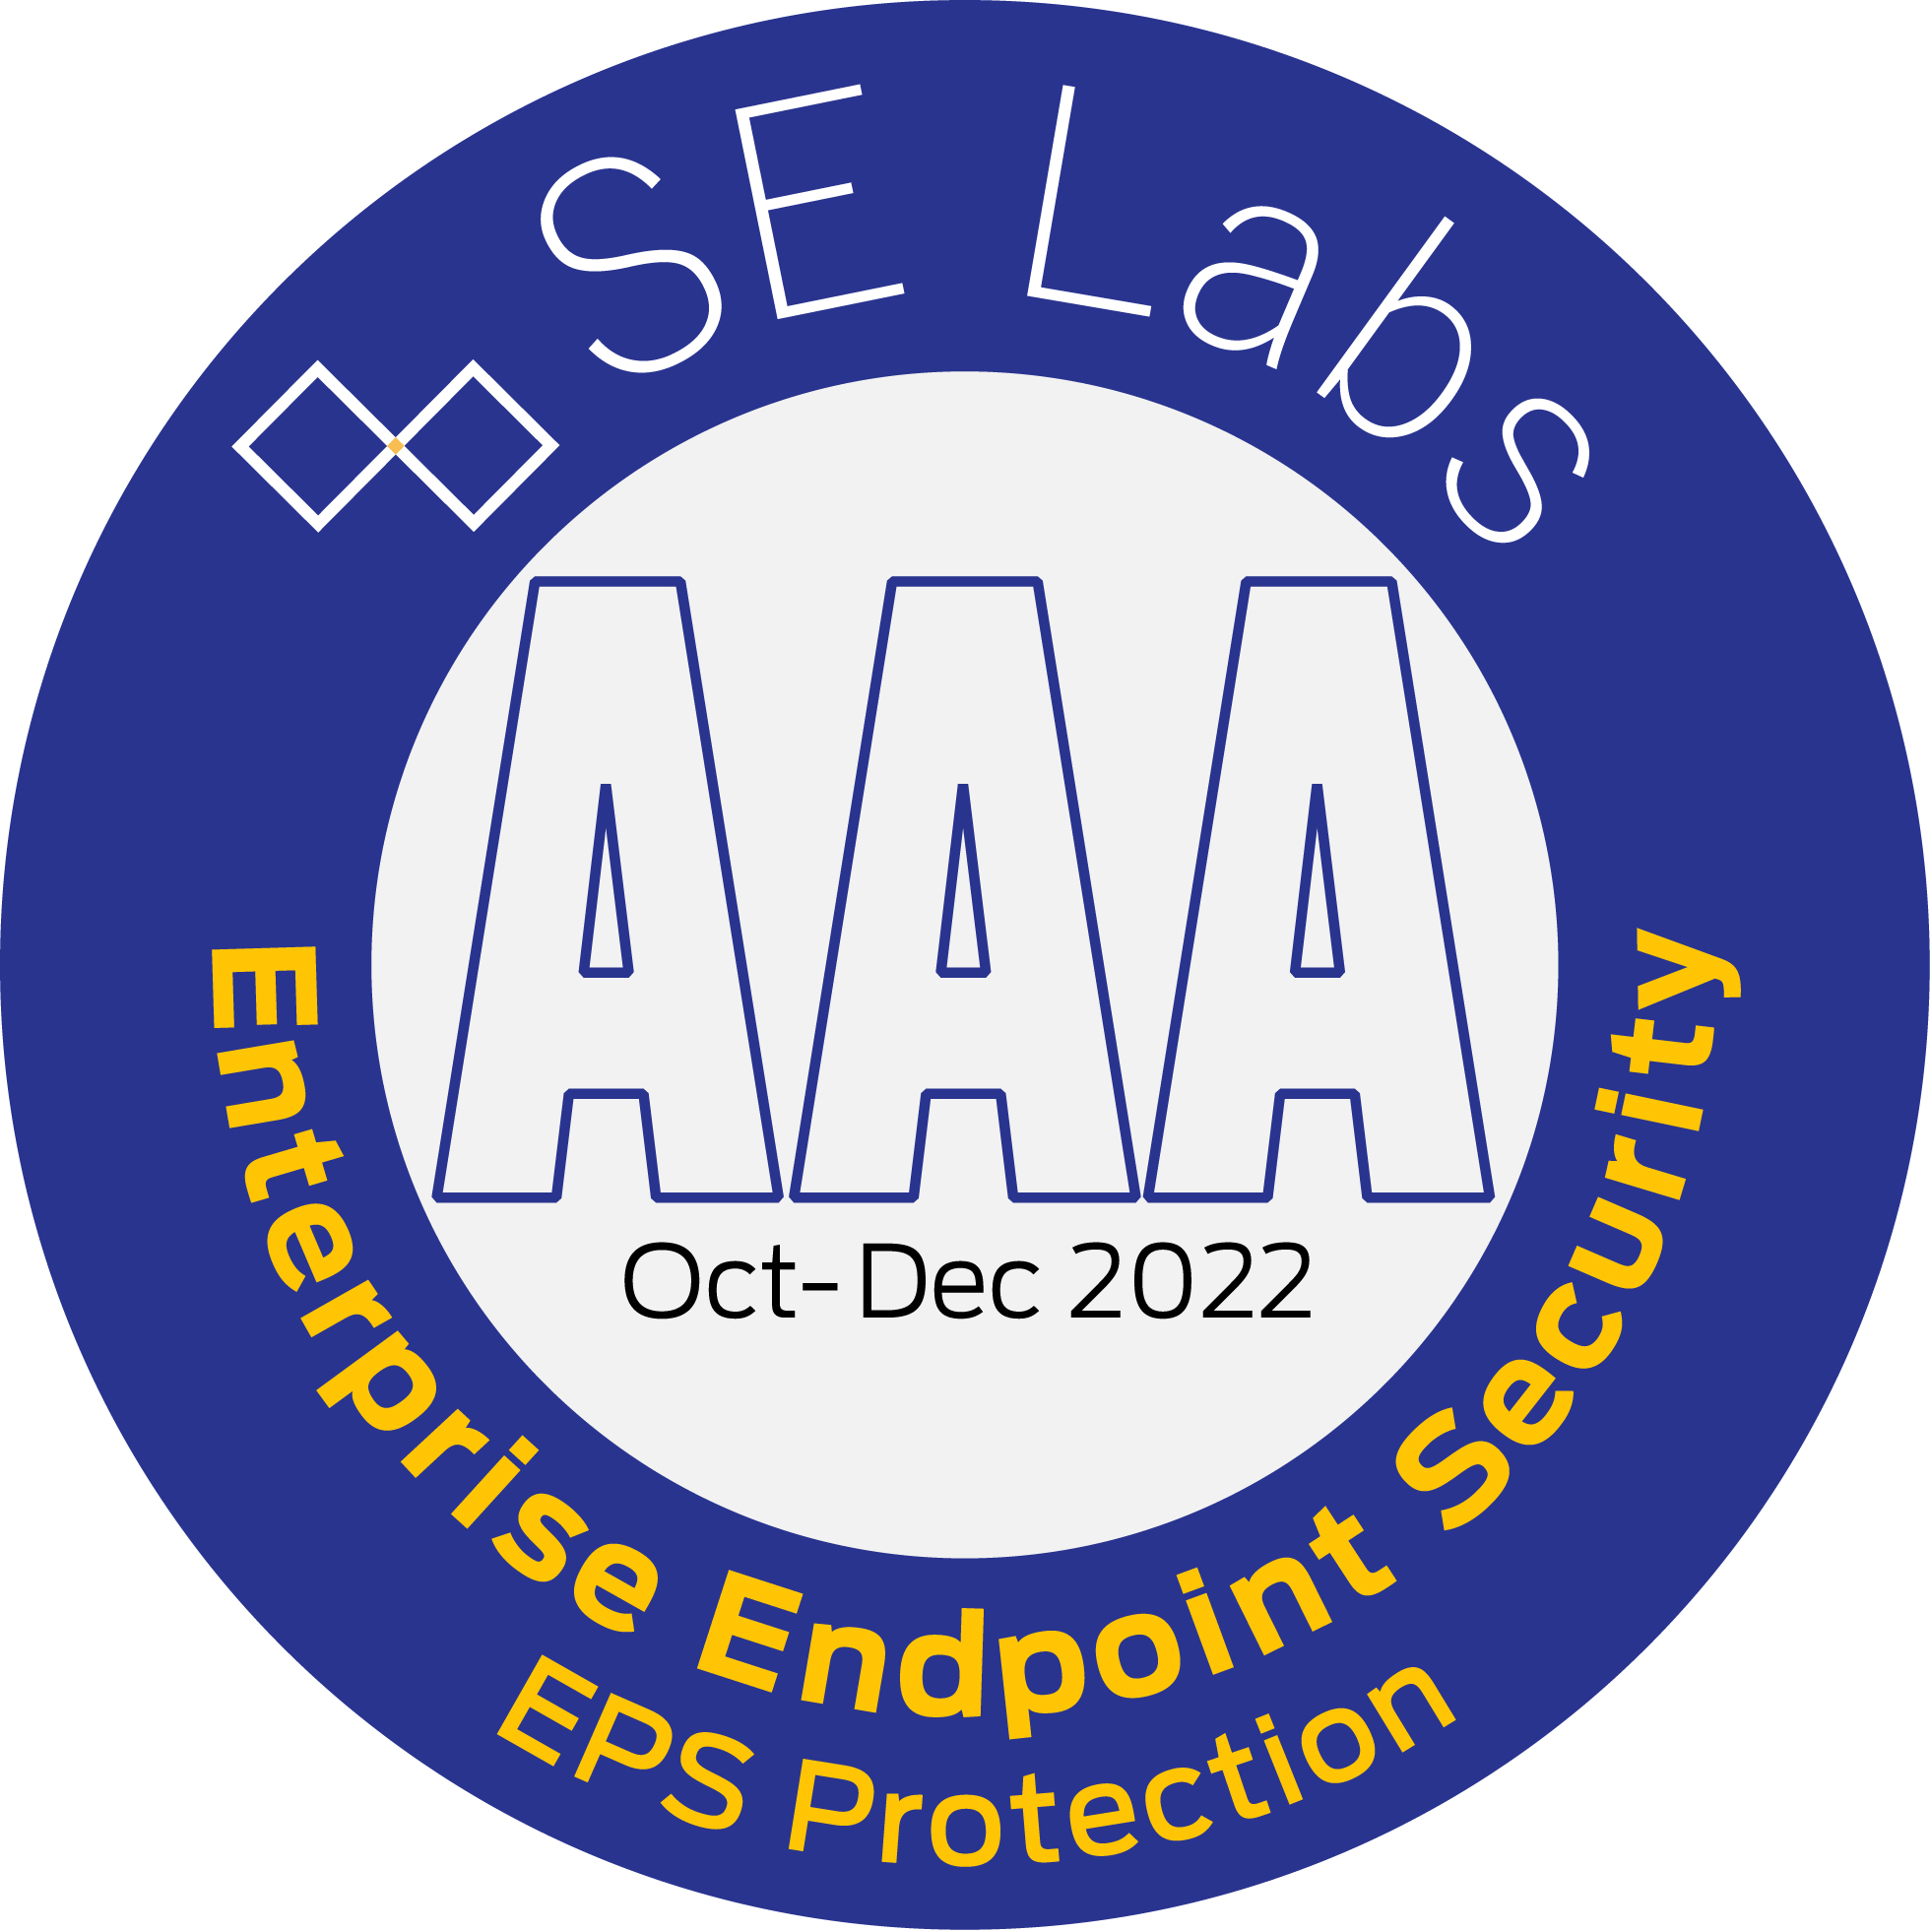 Seguridad para endpoints - Grandes empresas "AAA"